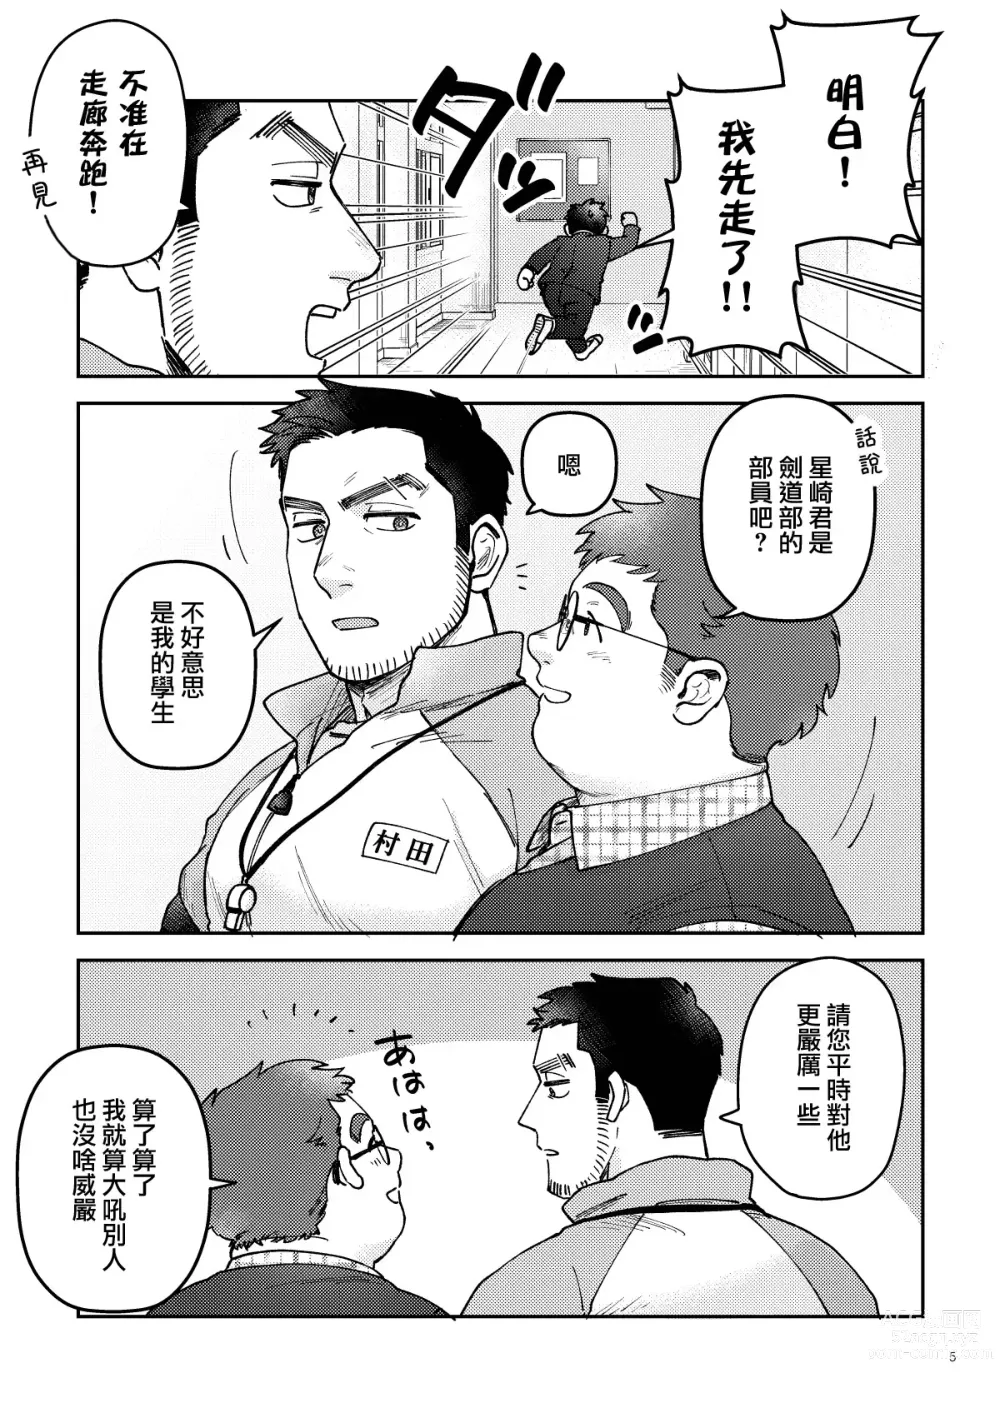 Page 5 of manga はいよろこんでのれイメージギャップハートビート